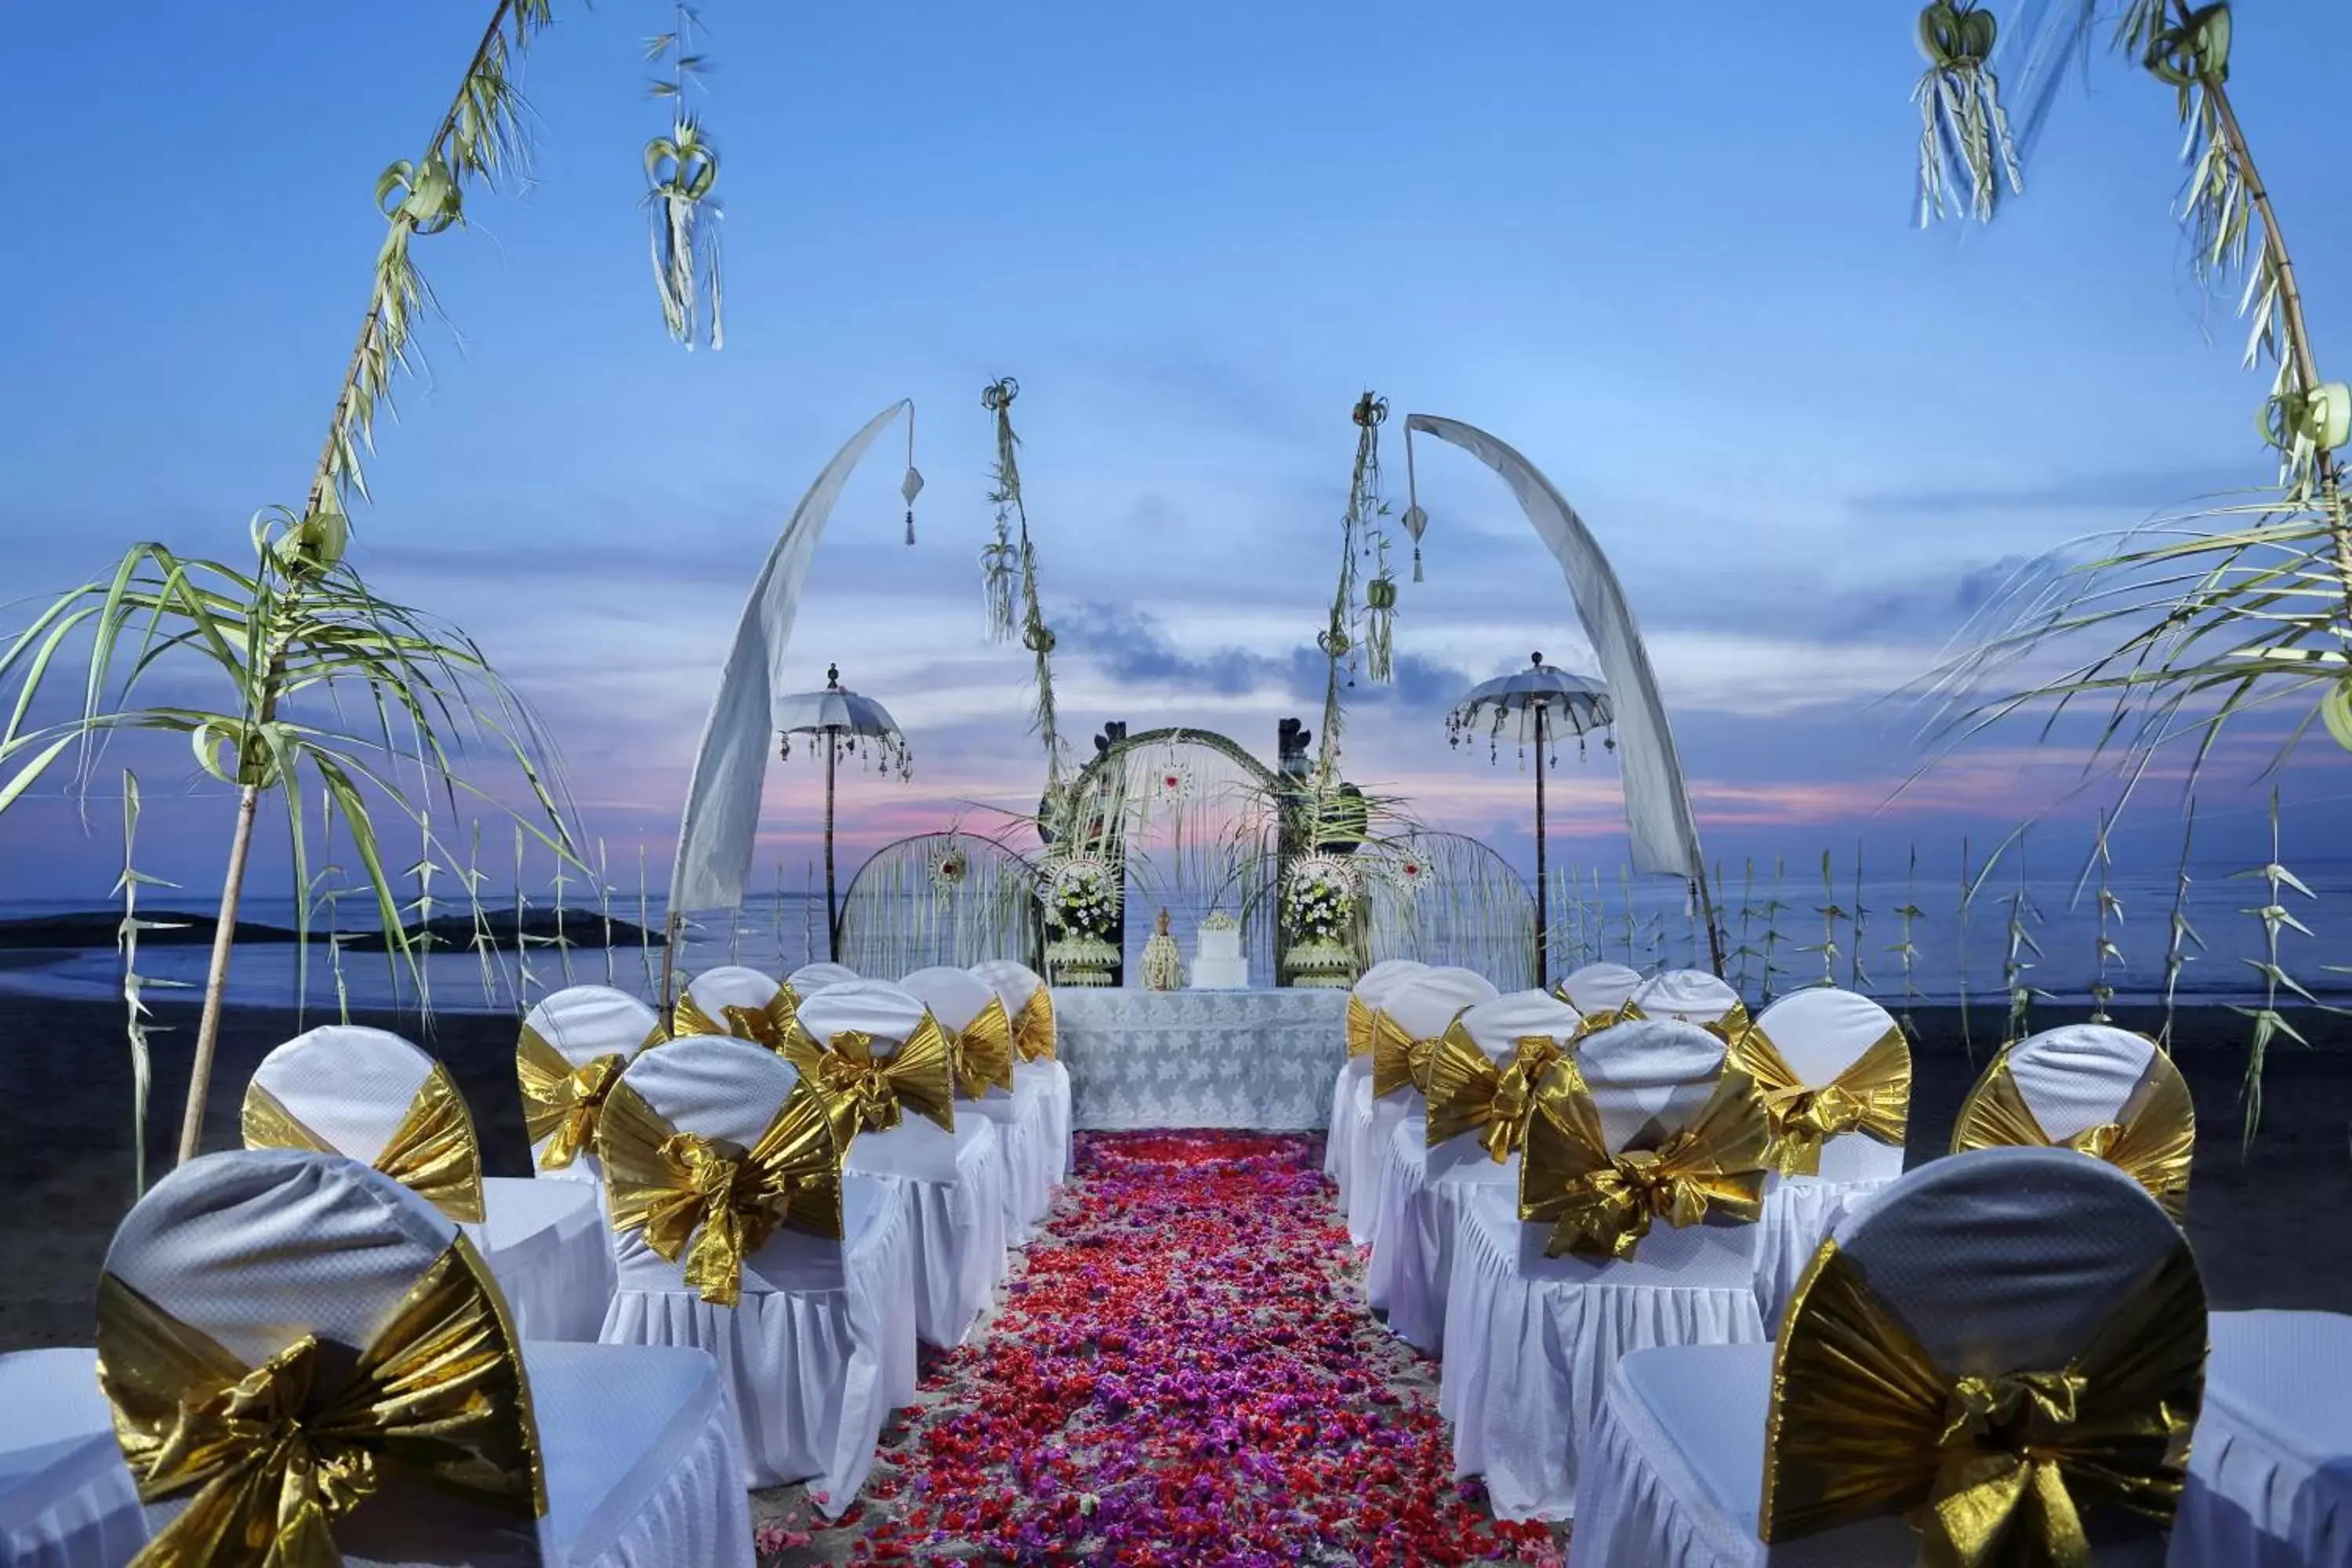 Banquet/Function facilities, Banquet Facilities in Bali Dynasty Resort